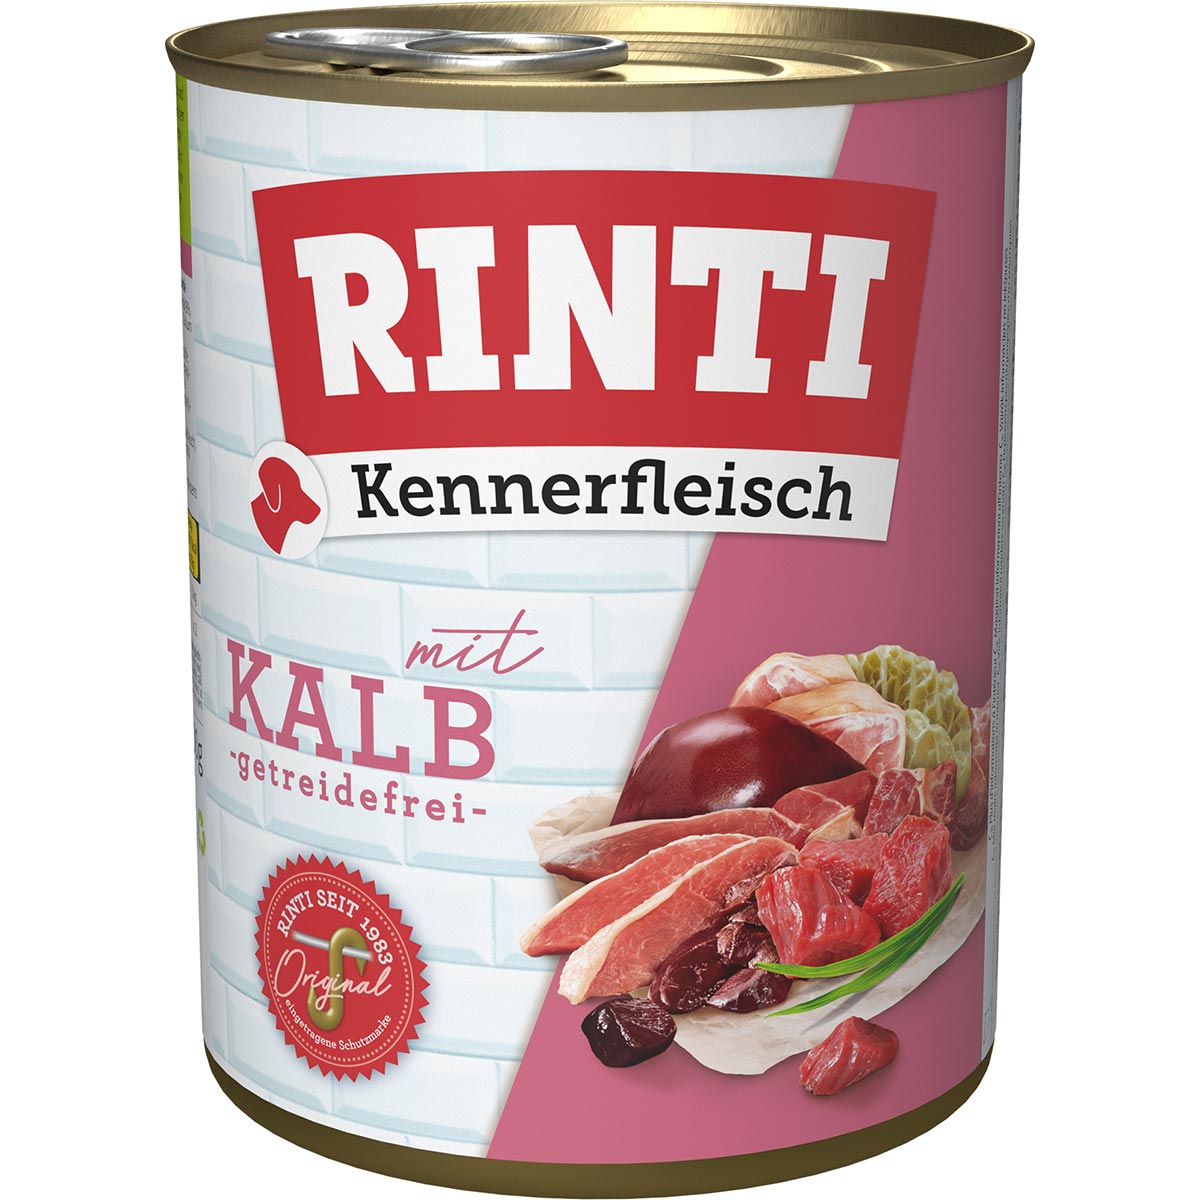 Rinti Kennerfleisch Kalb 12x800g von Rinti